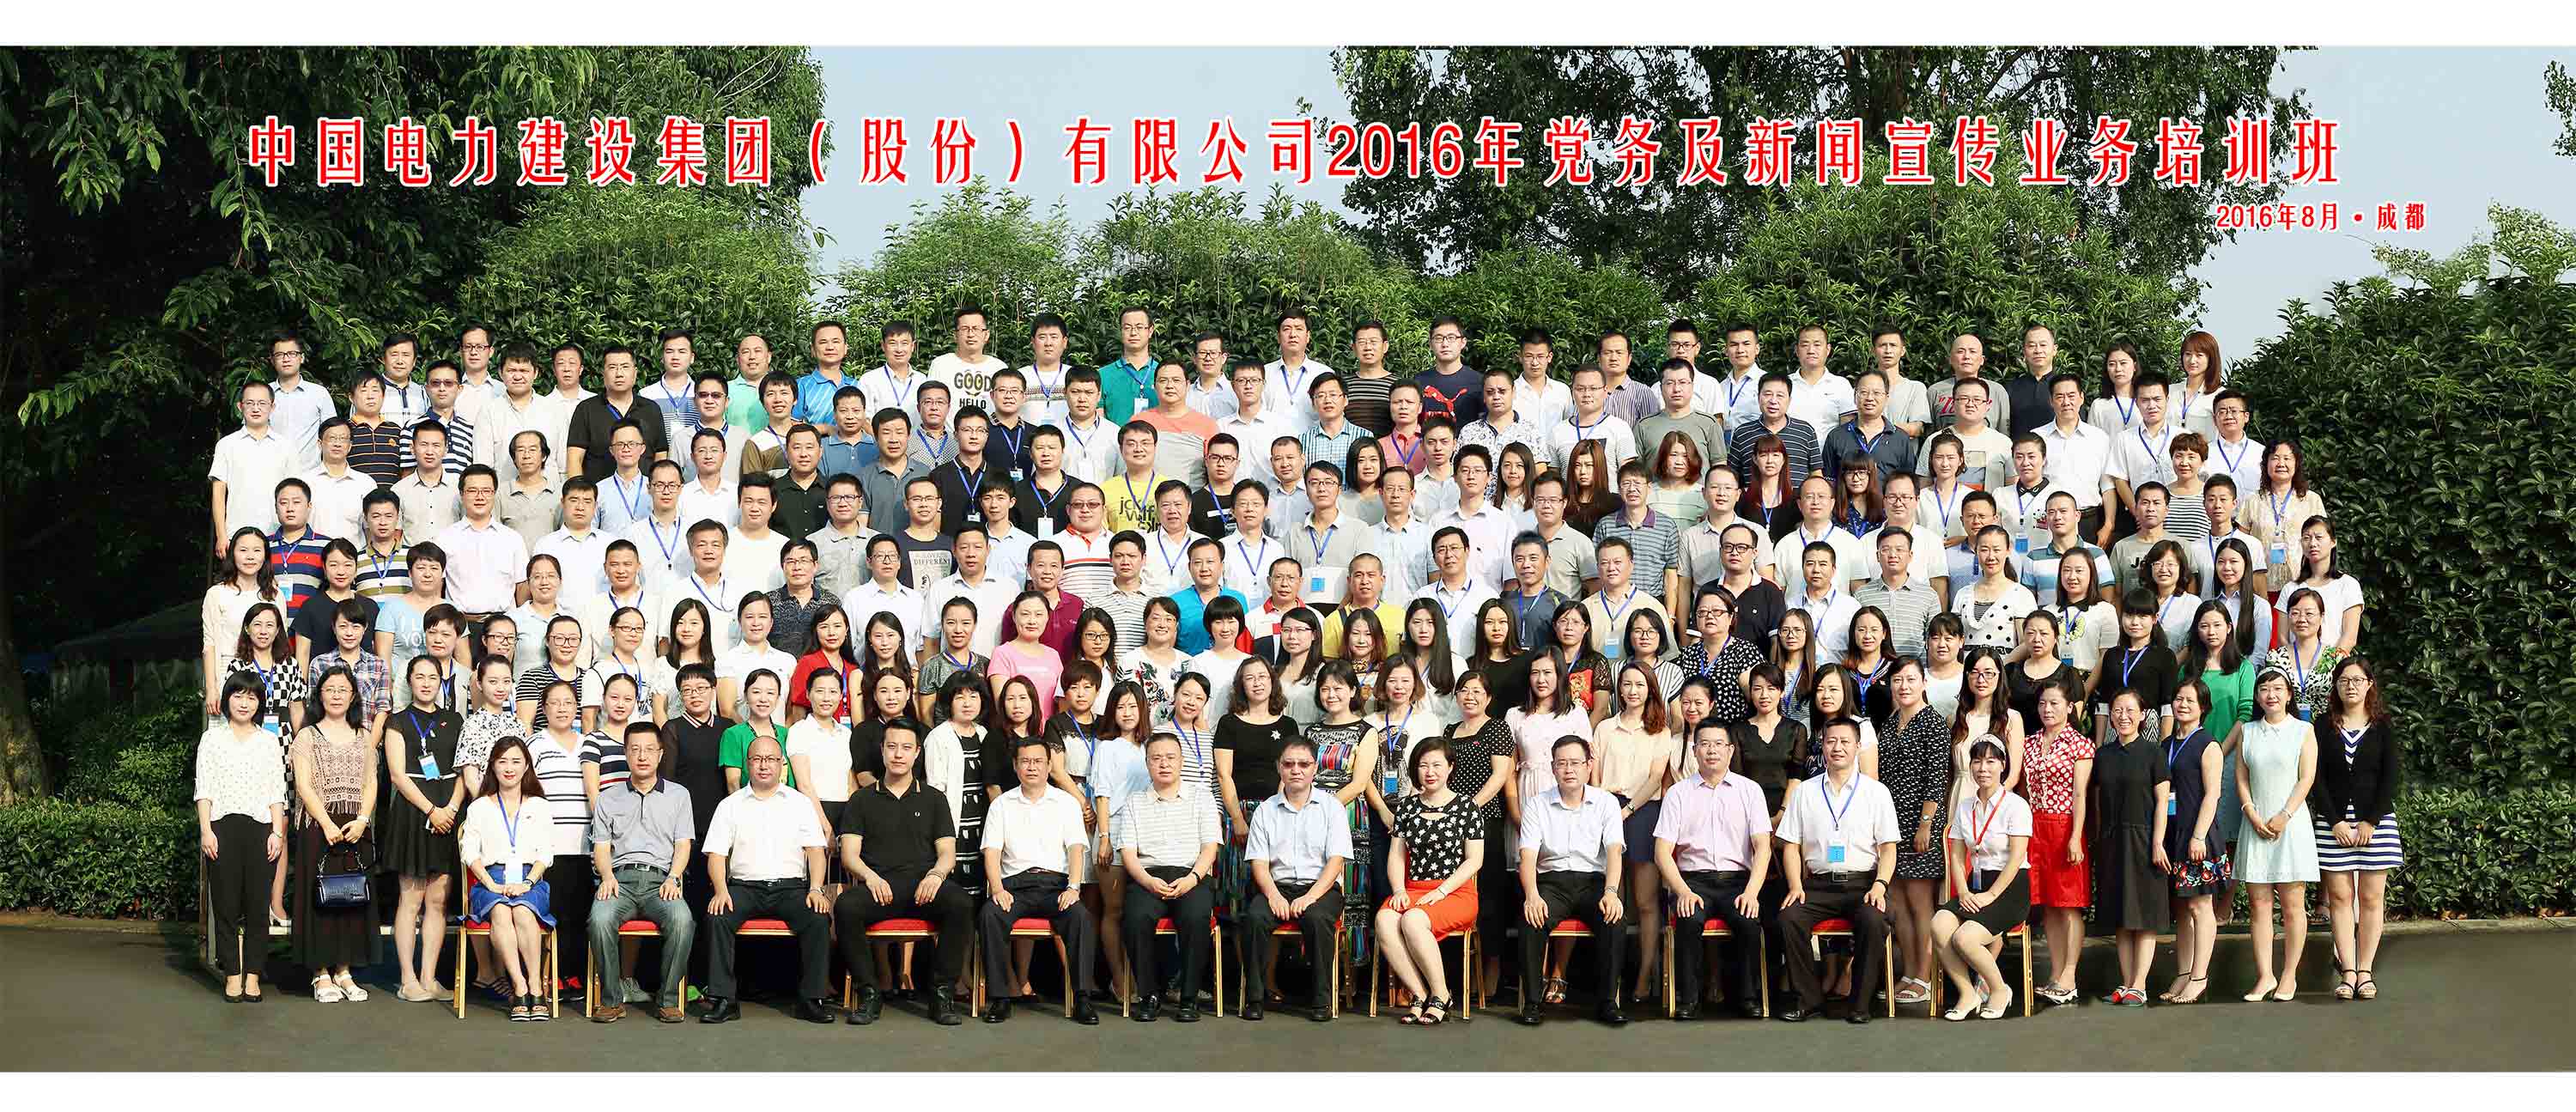 中国电力建设集团培训班集体照合影